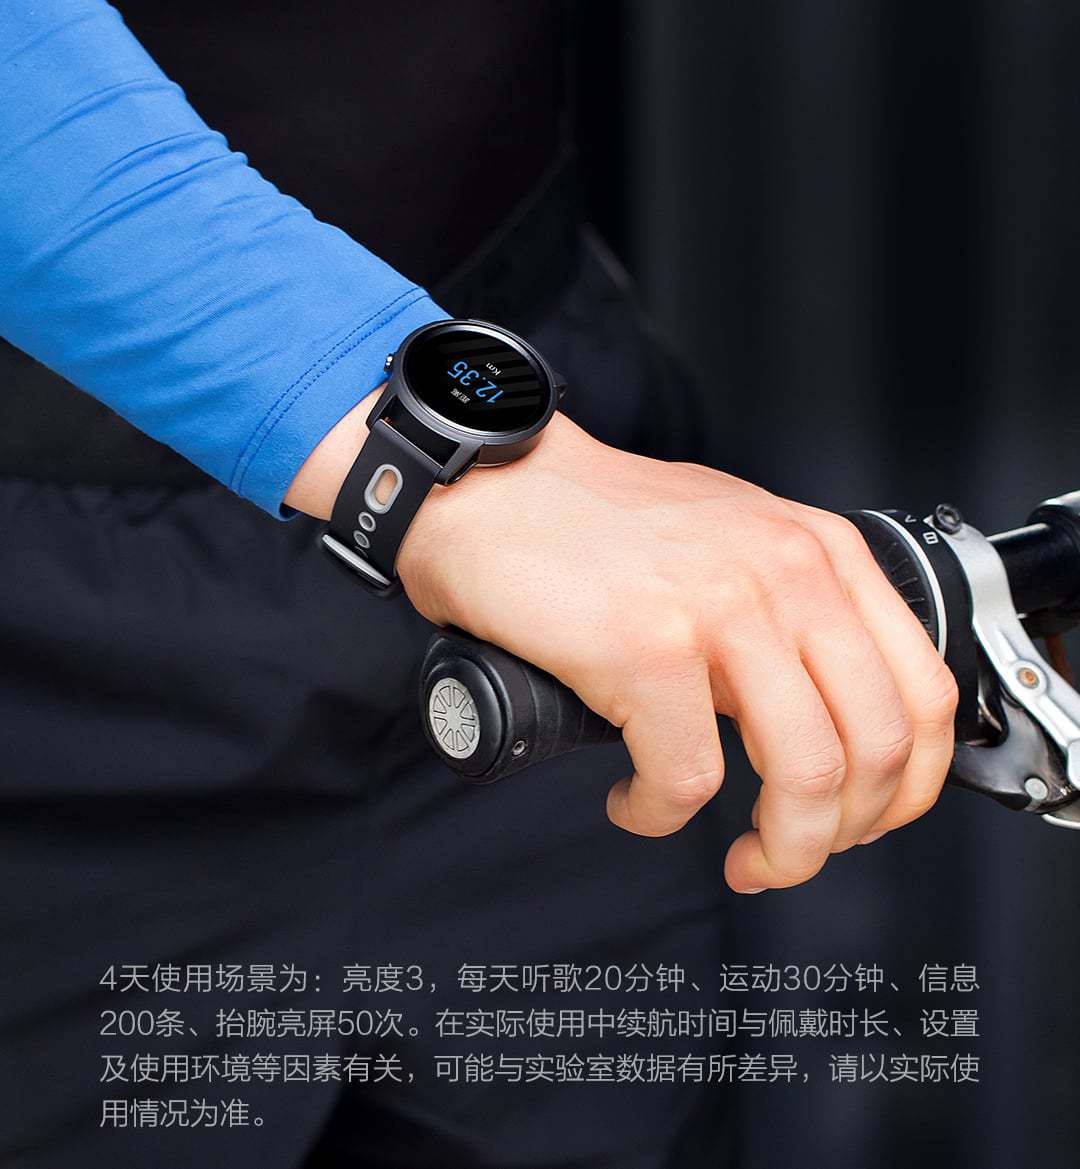 Xiaomi předvedlo tréninkové hodinky